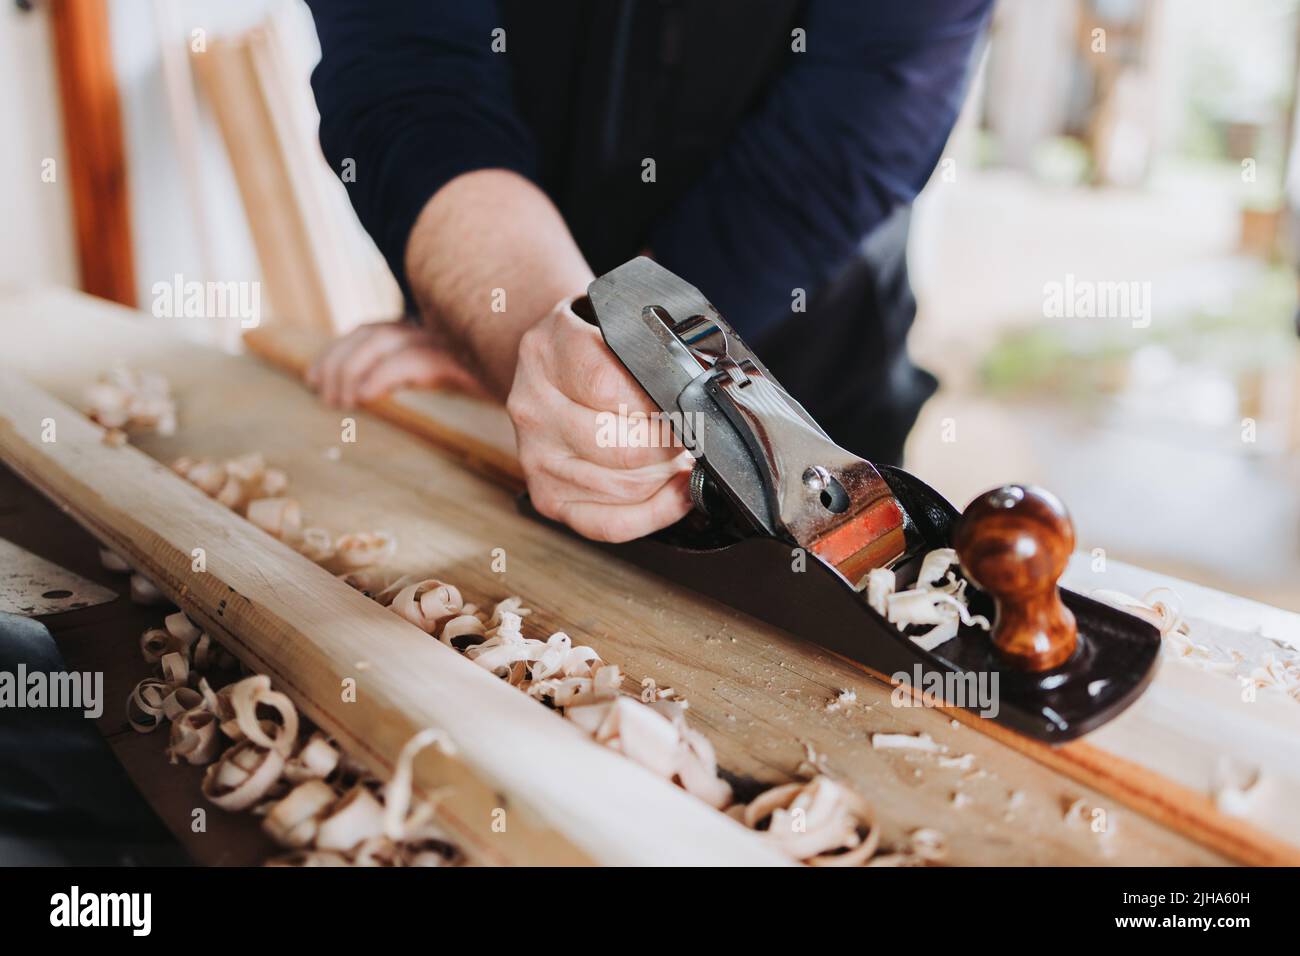 homme méconnaissable utilisant une vieille brosse de charpentier en acier sculptant un bâton de bois, dans son atelier. Banque D'Images